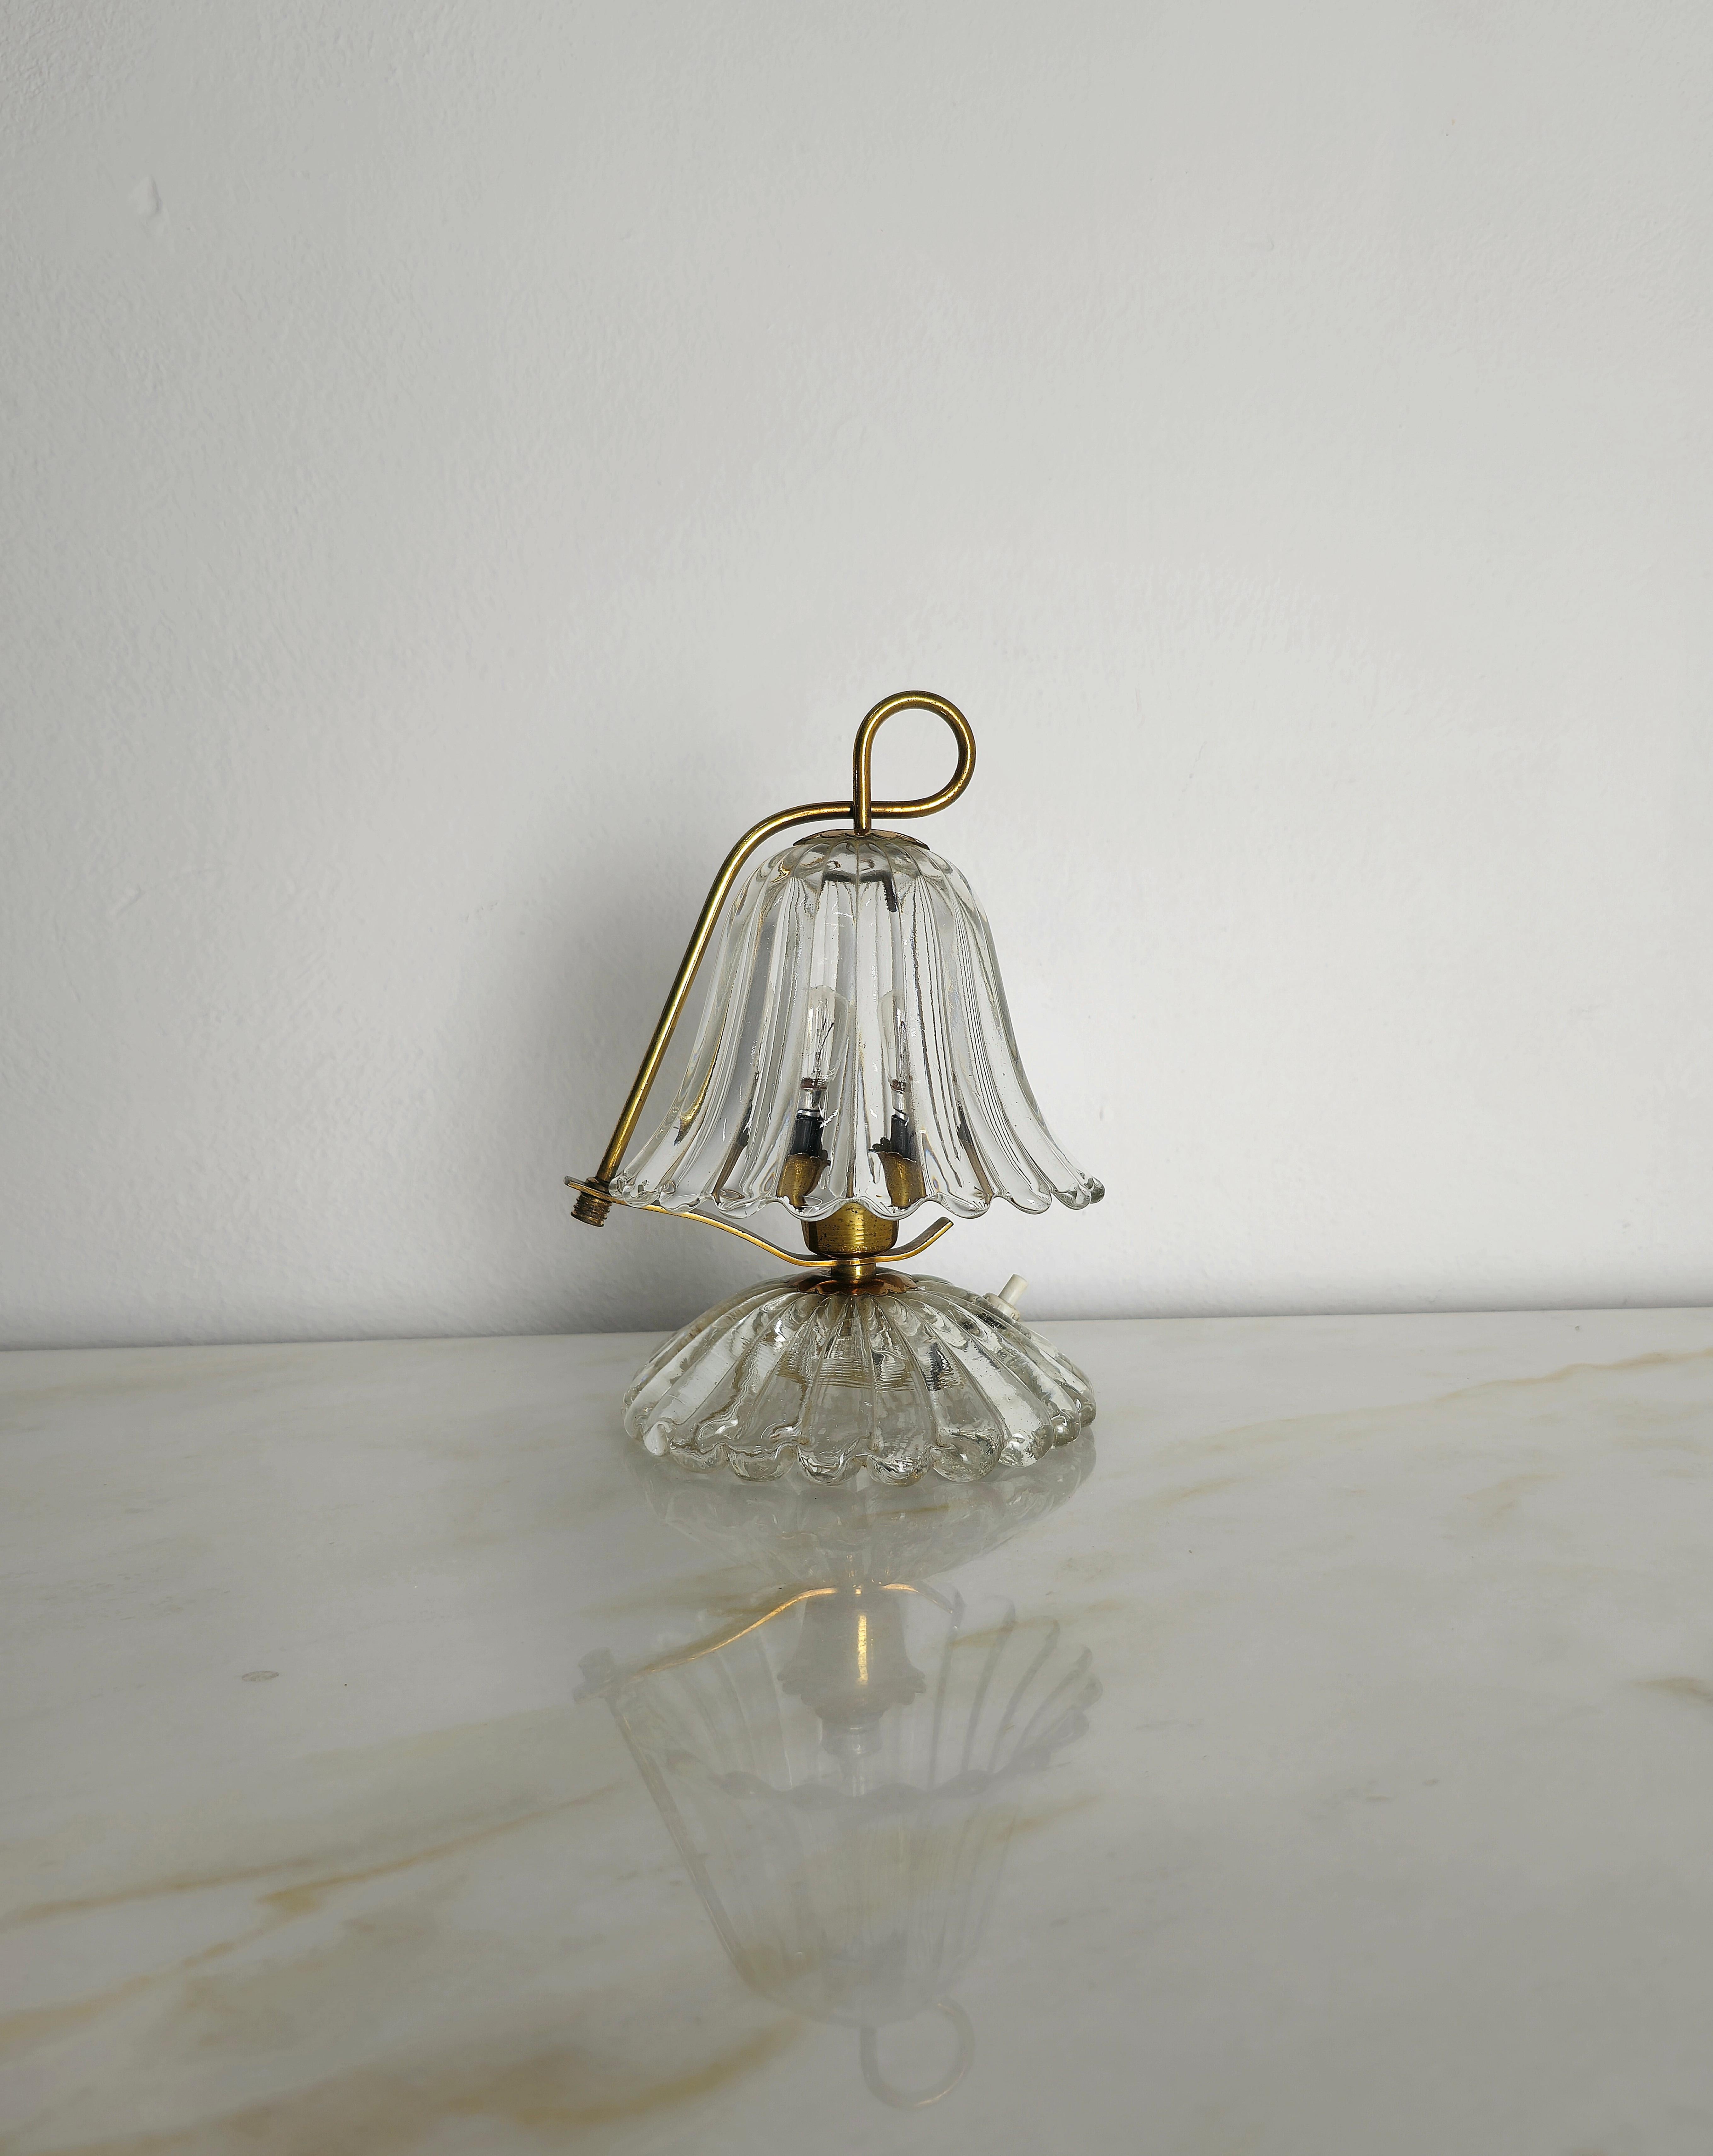 Kleine Tischlampe, die in den 1940er Jahren von Barovier und Toso in Italien hergestellt wurde.
Die Tischleuchte ist aus Messing und Murano-Glas gefertigt, mit der Besonderheit, dass das obere Glas nach rechts oder links verstellbar ist, wie im